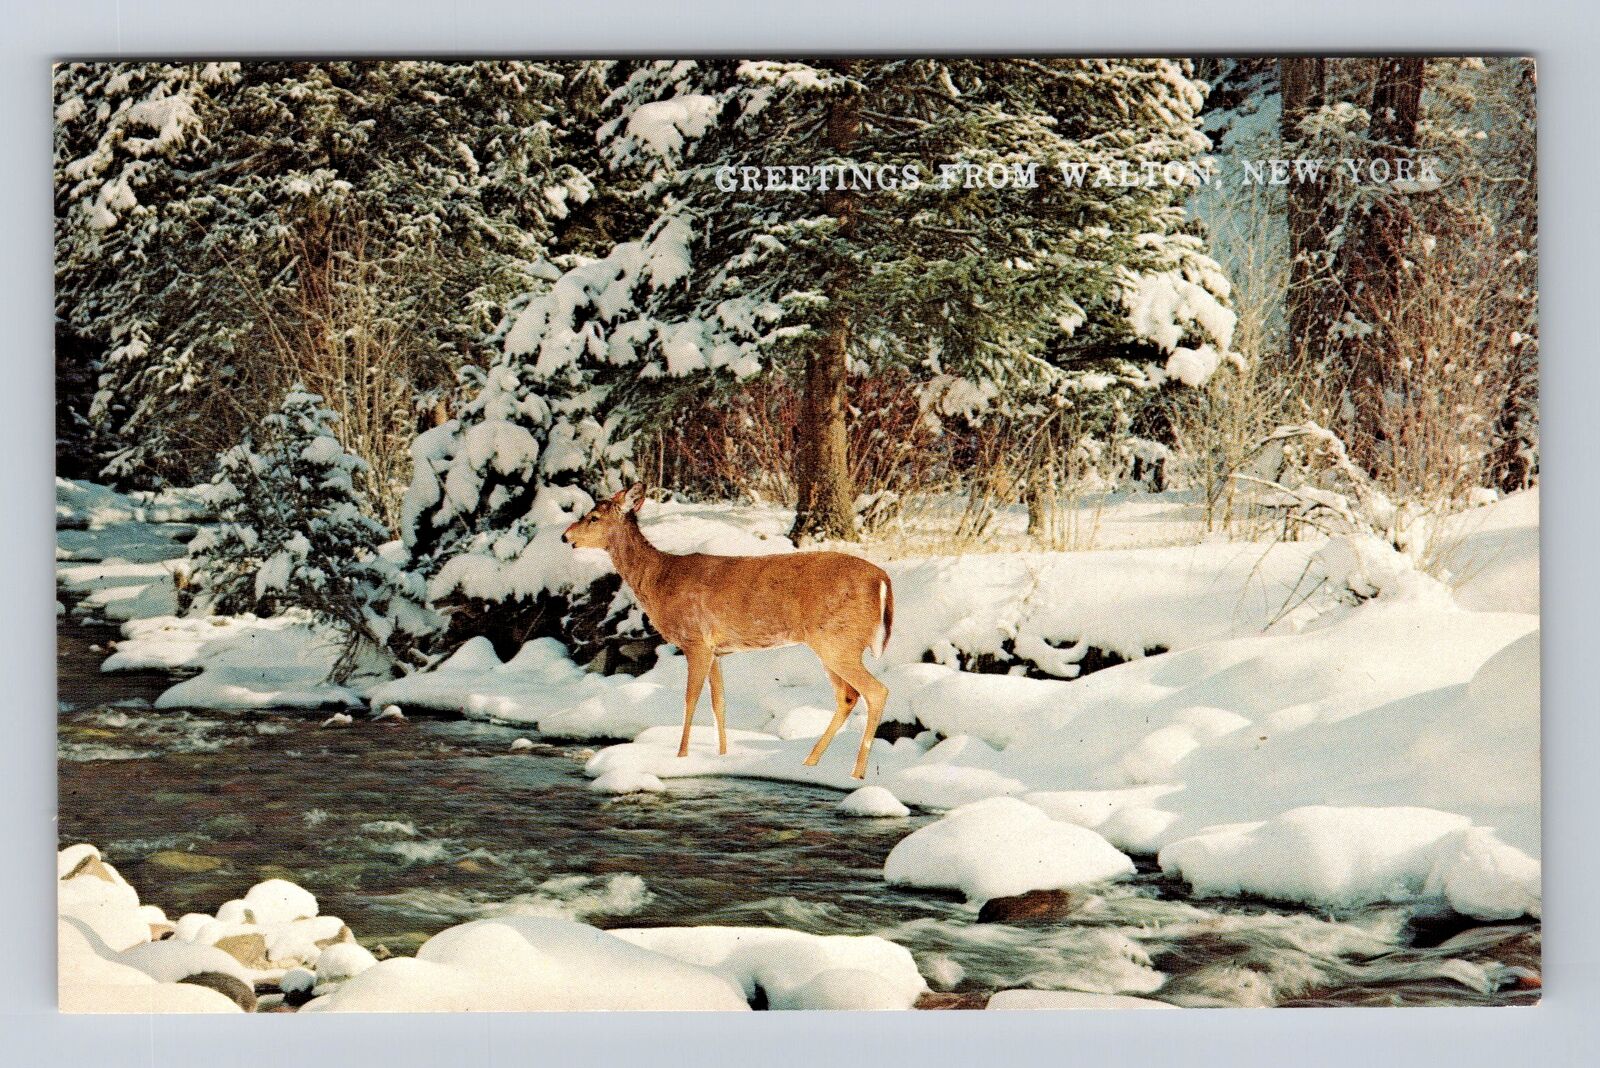 Walton NY-New York, General Greetings, Deer in Winter Scene, Vintage Postcard